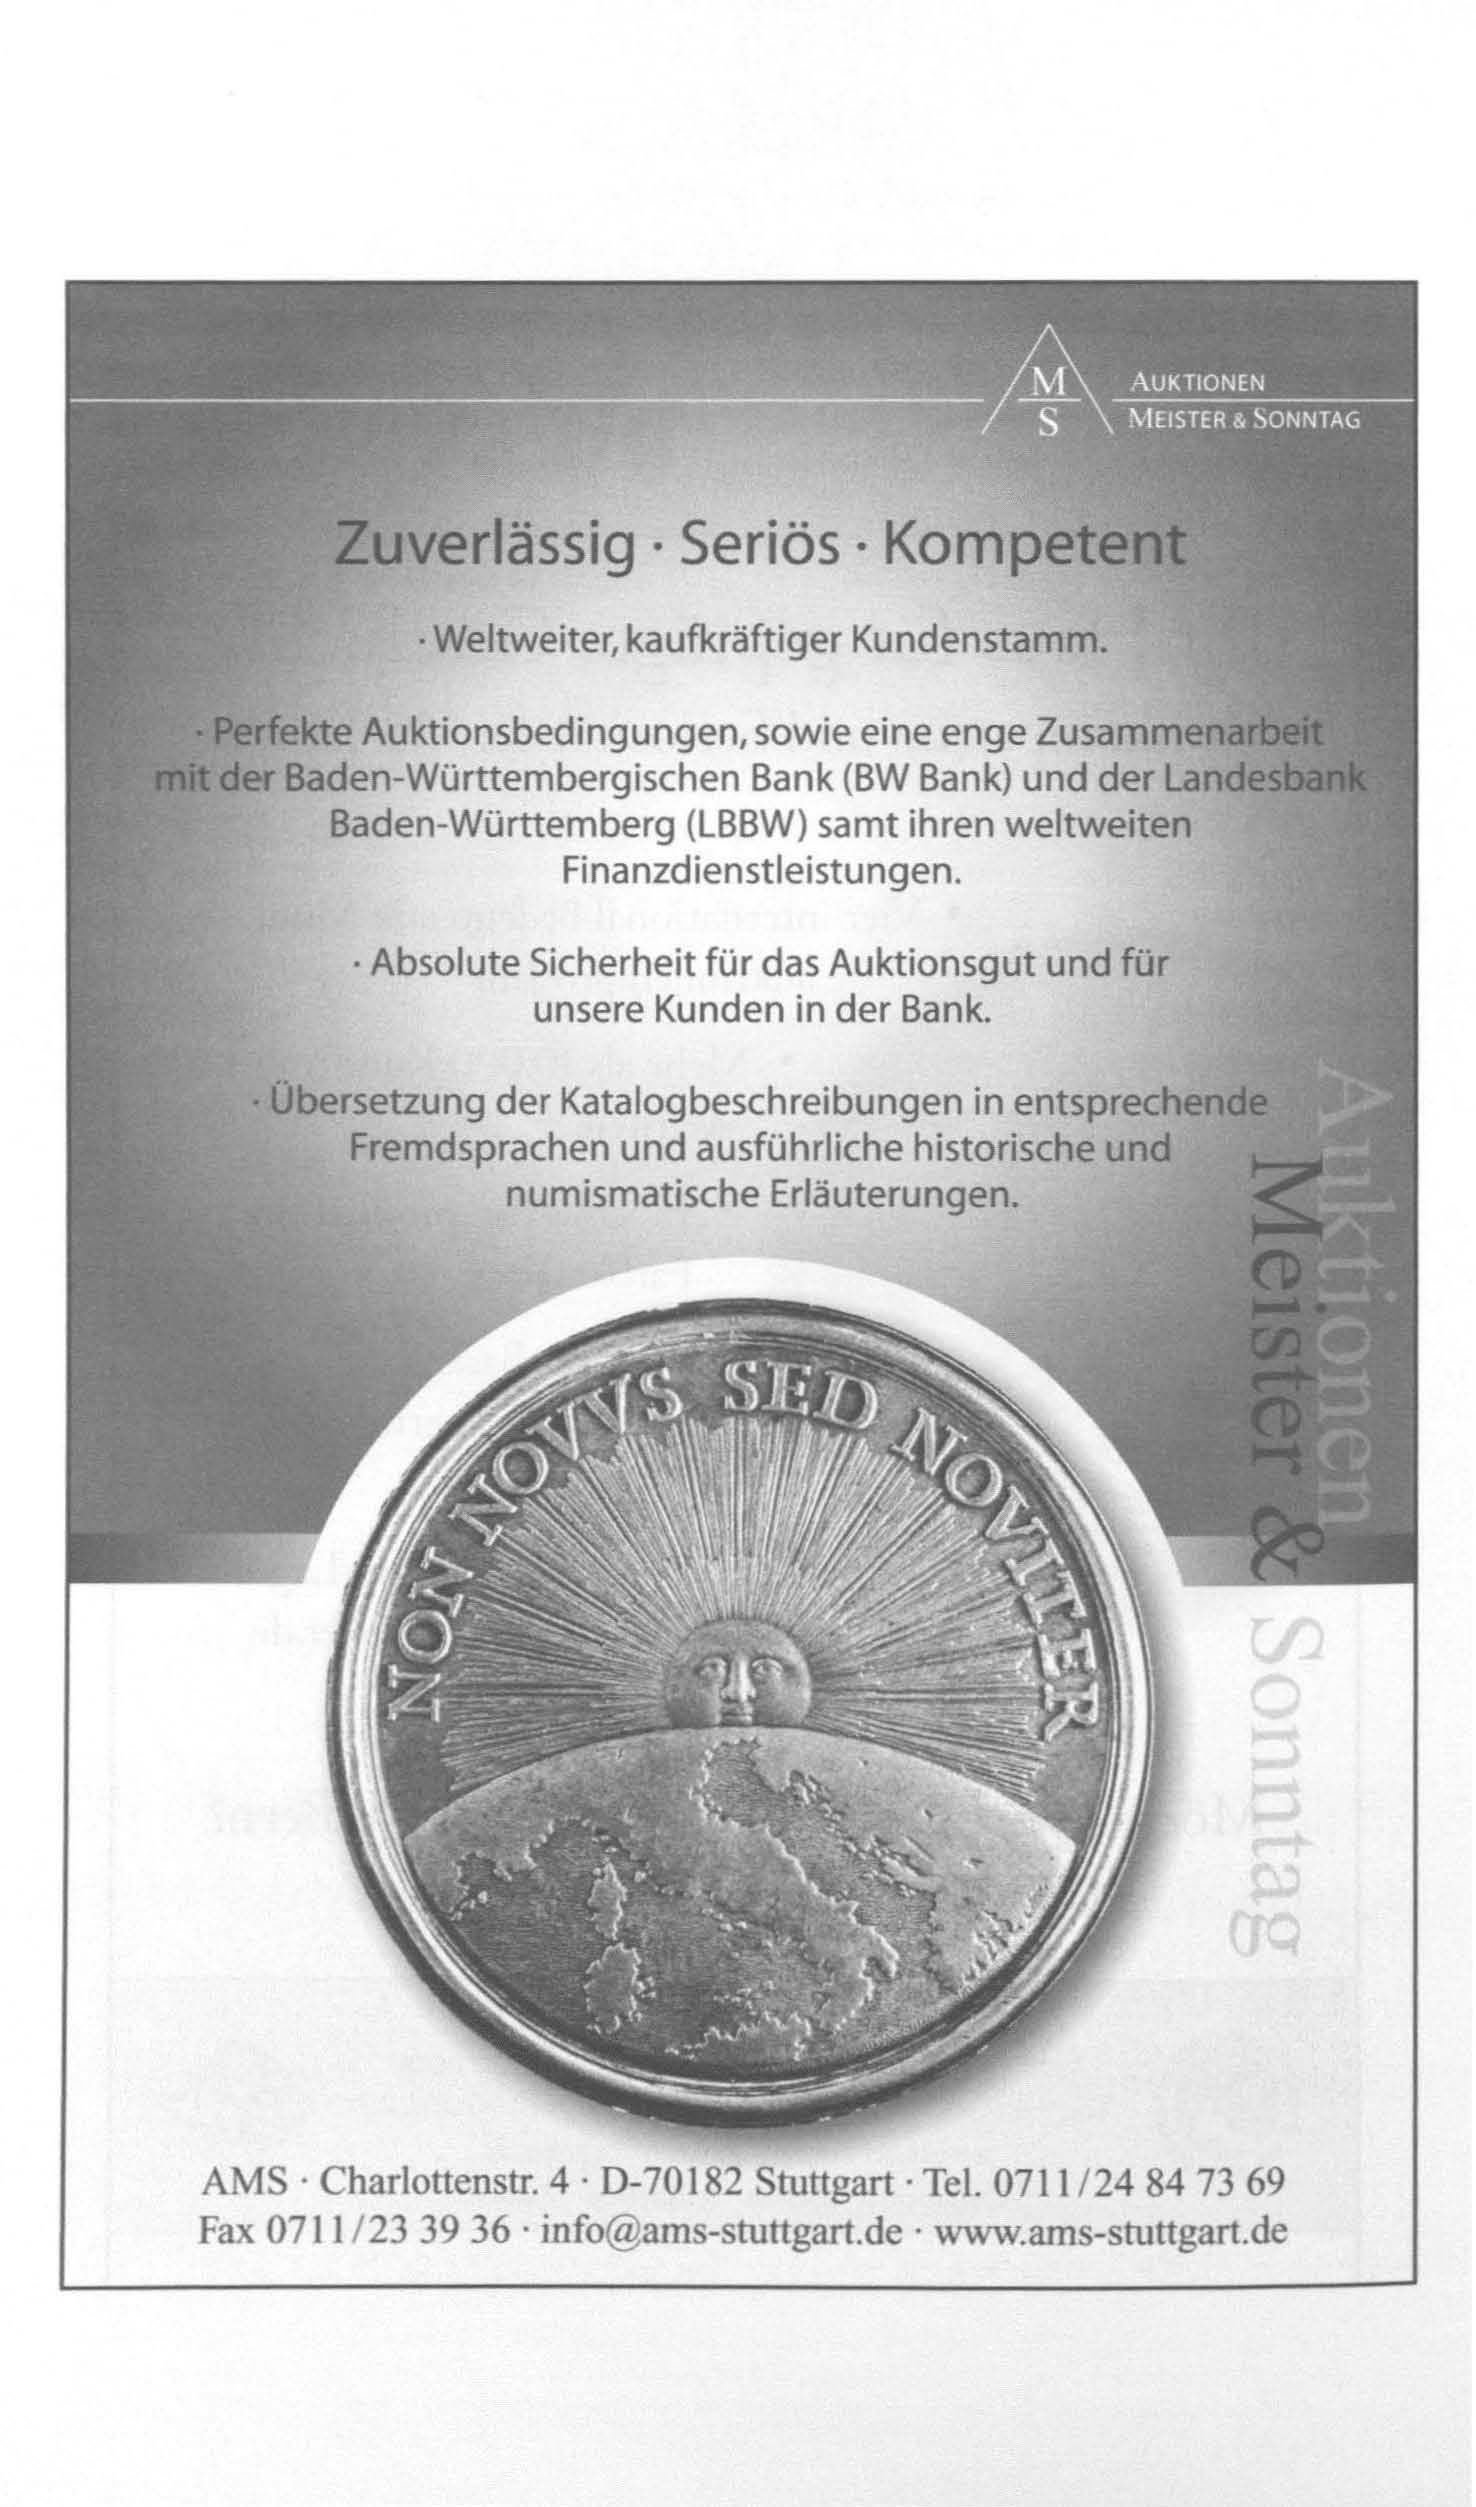 Auktionsbedingungen, sowie eine enge Baden-Württembergischen Bank (BW Bank) und der Baden-Württemberg (LBBW) samt ihren weltweiten Finanzdienstleistungen.